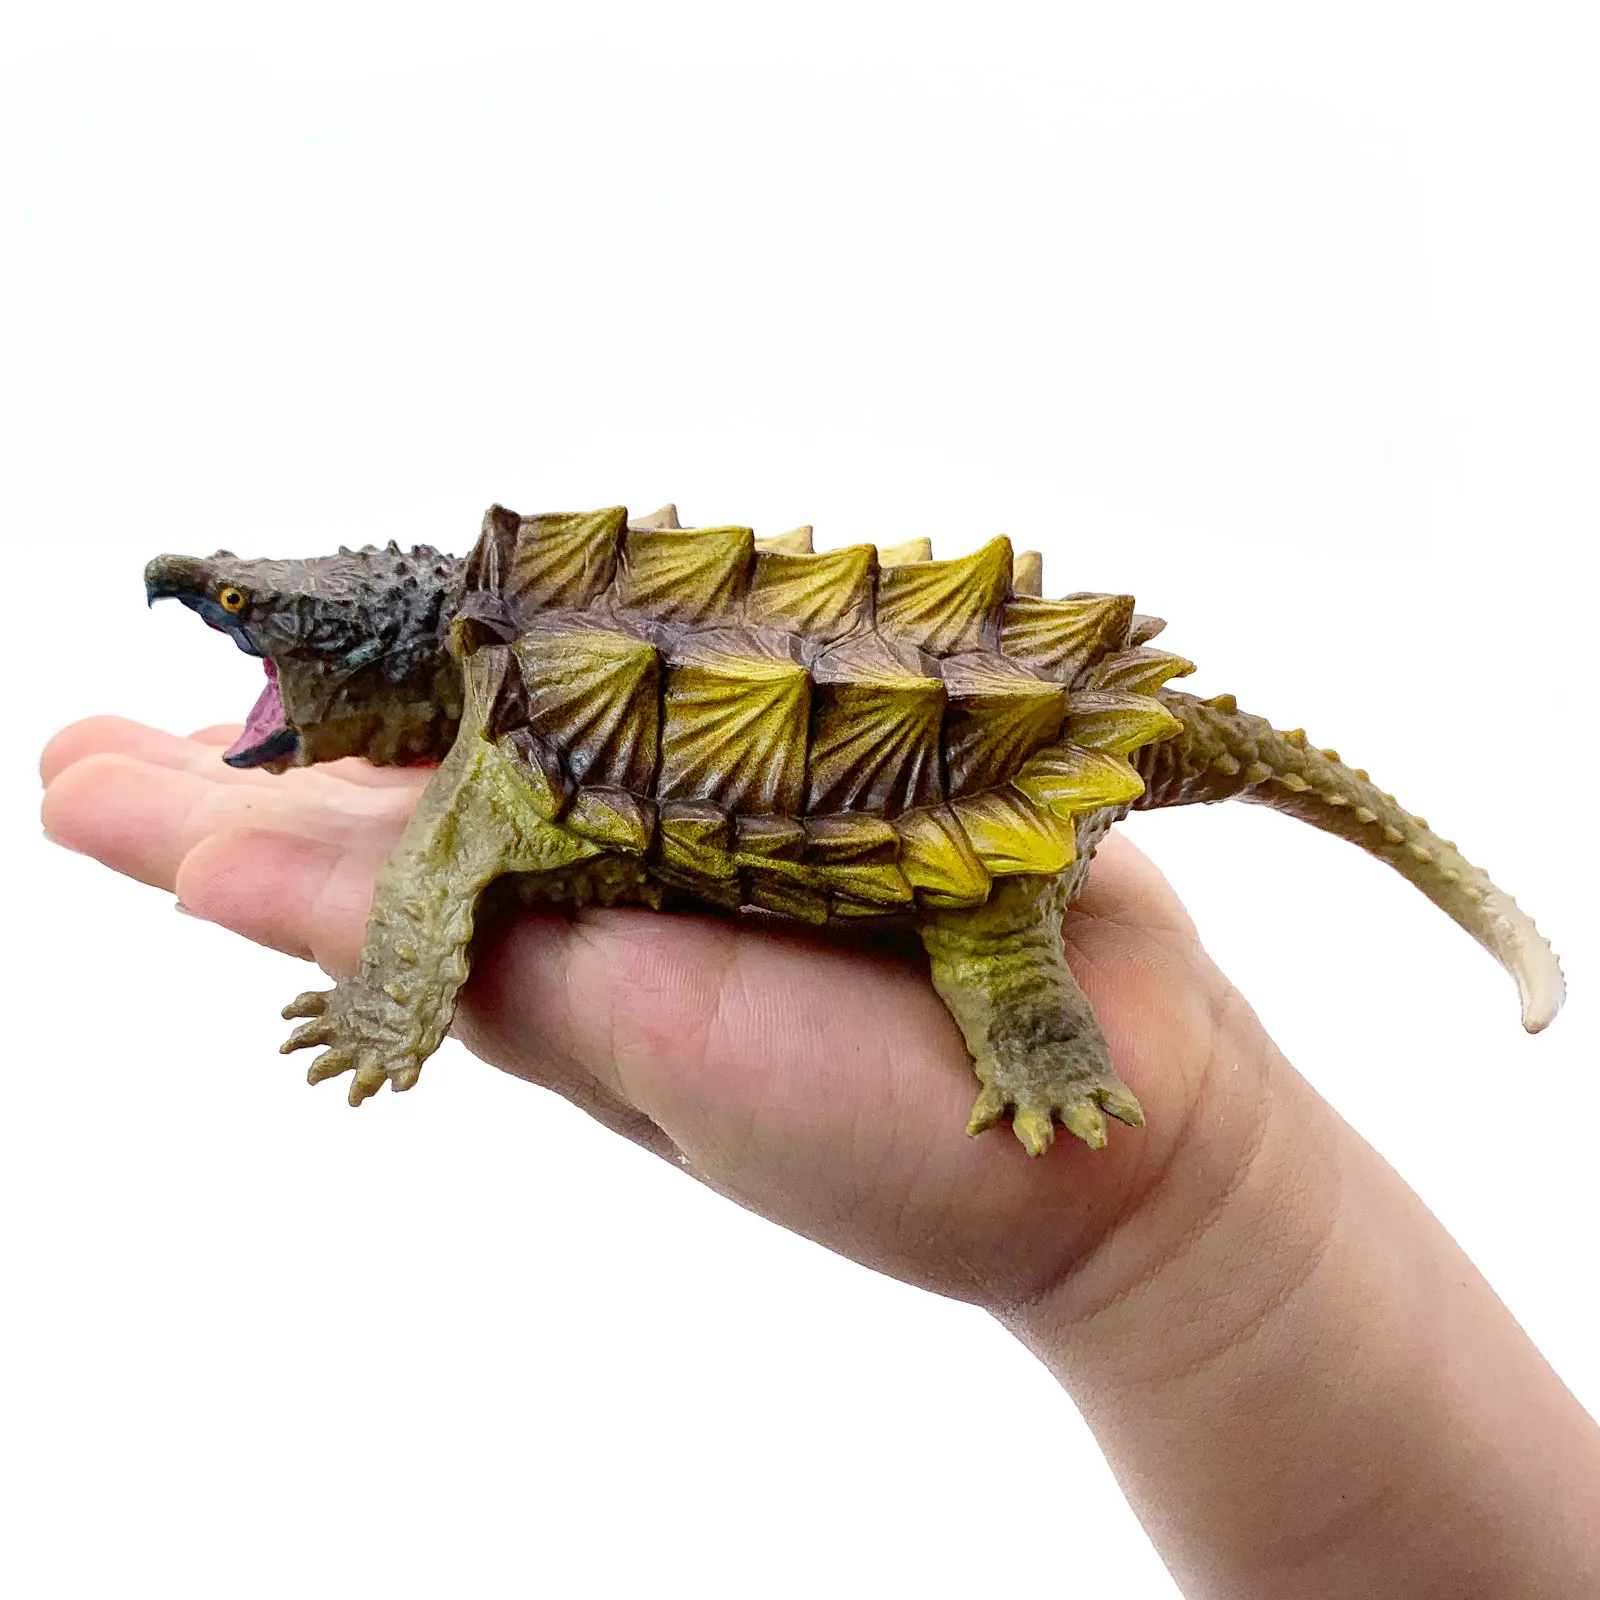 Jouets de figurines d'animaux en plastique PVC réalistes de haute qualité Animal écologique animal de compagnie dangereux Crocodile tortue